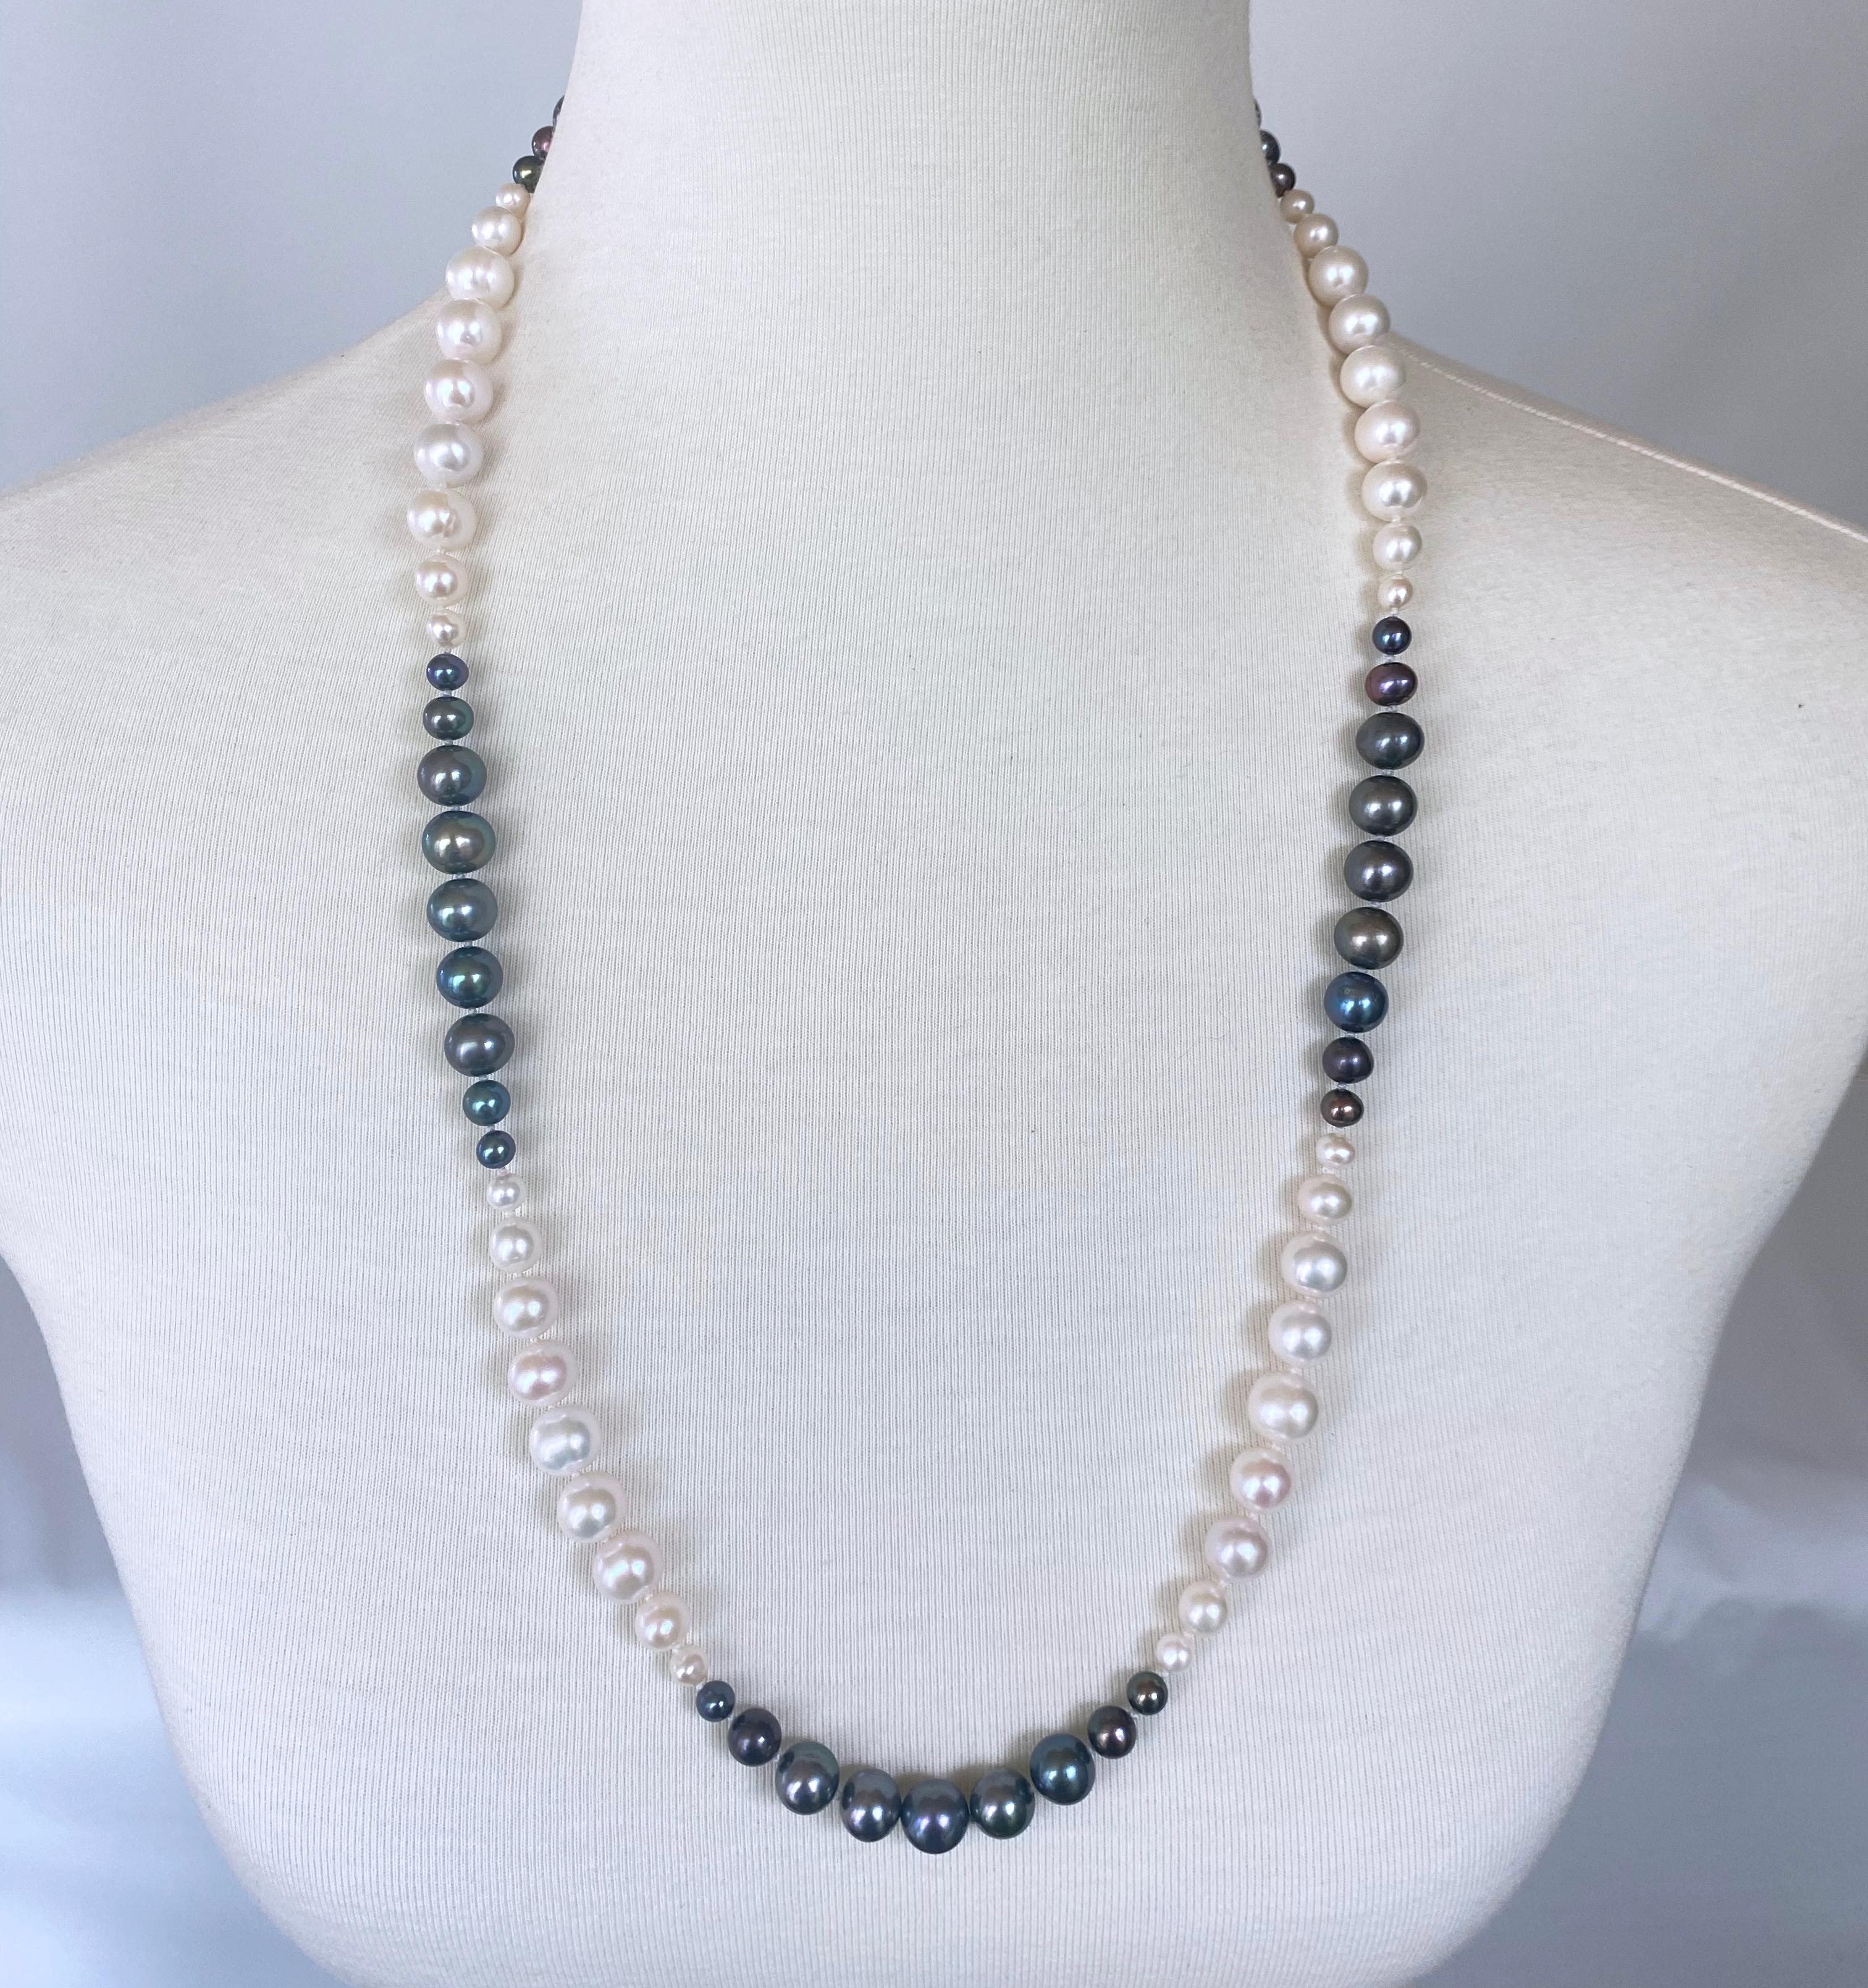 Wunderschönes Perlen-Ombre-Halsband von Marina J. Dieses schöne Stück besteht aus weißen und schwarzen Zuchtperlen, die mit verschiedenen Größenabstufungen aneinandergereiht sind. Die Perlen haben einen wundervollen Glanz und alle Black Pearls